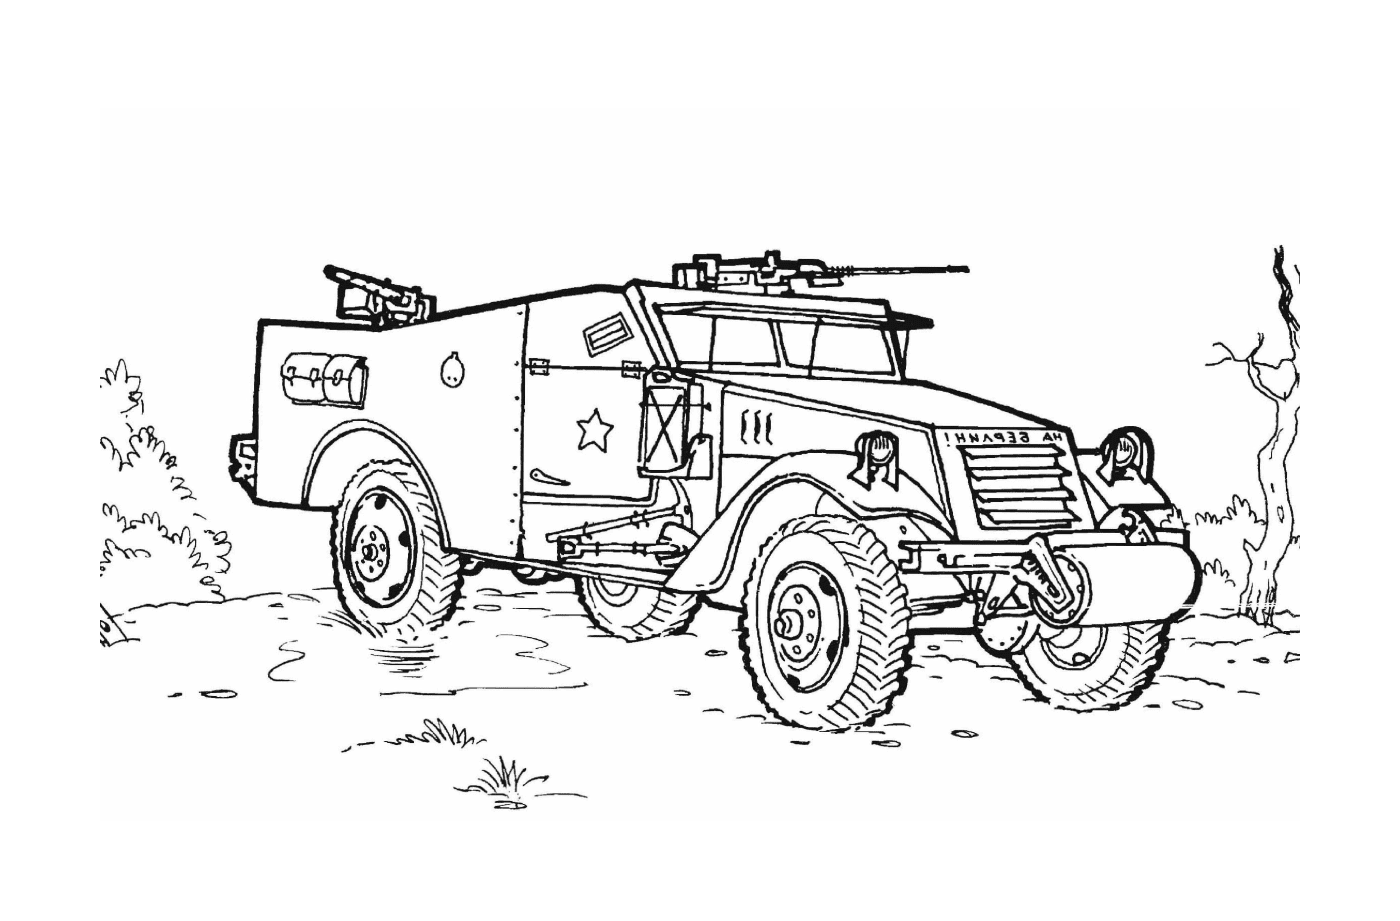  Veicolo militare con armi: un vecchio veicolo militare progettato 